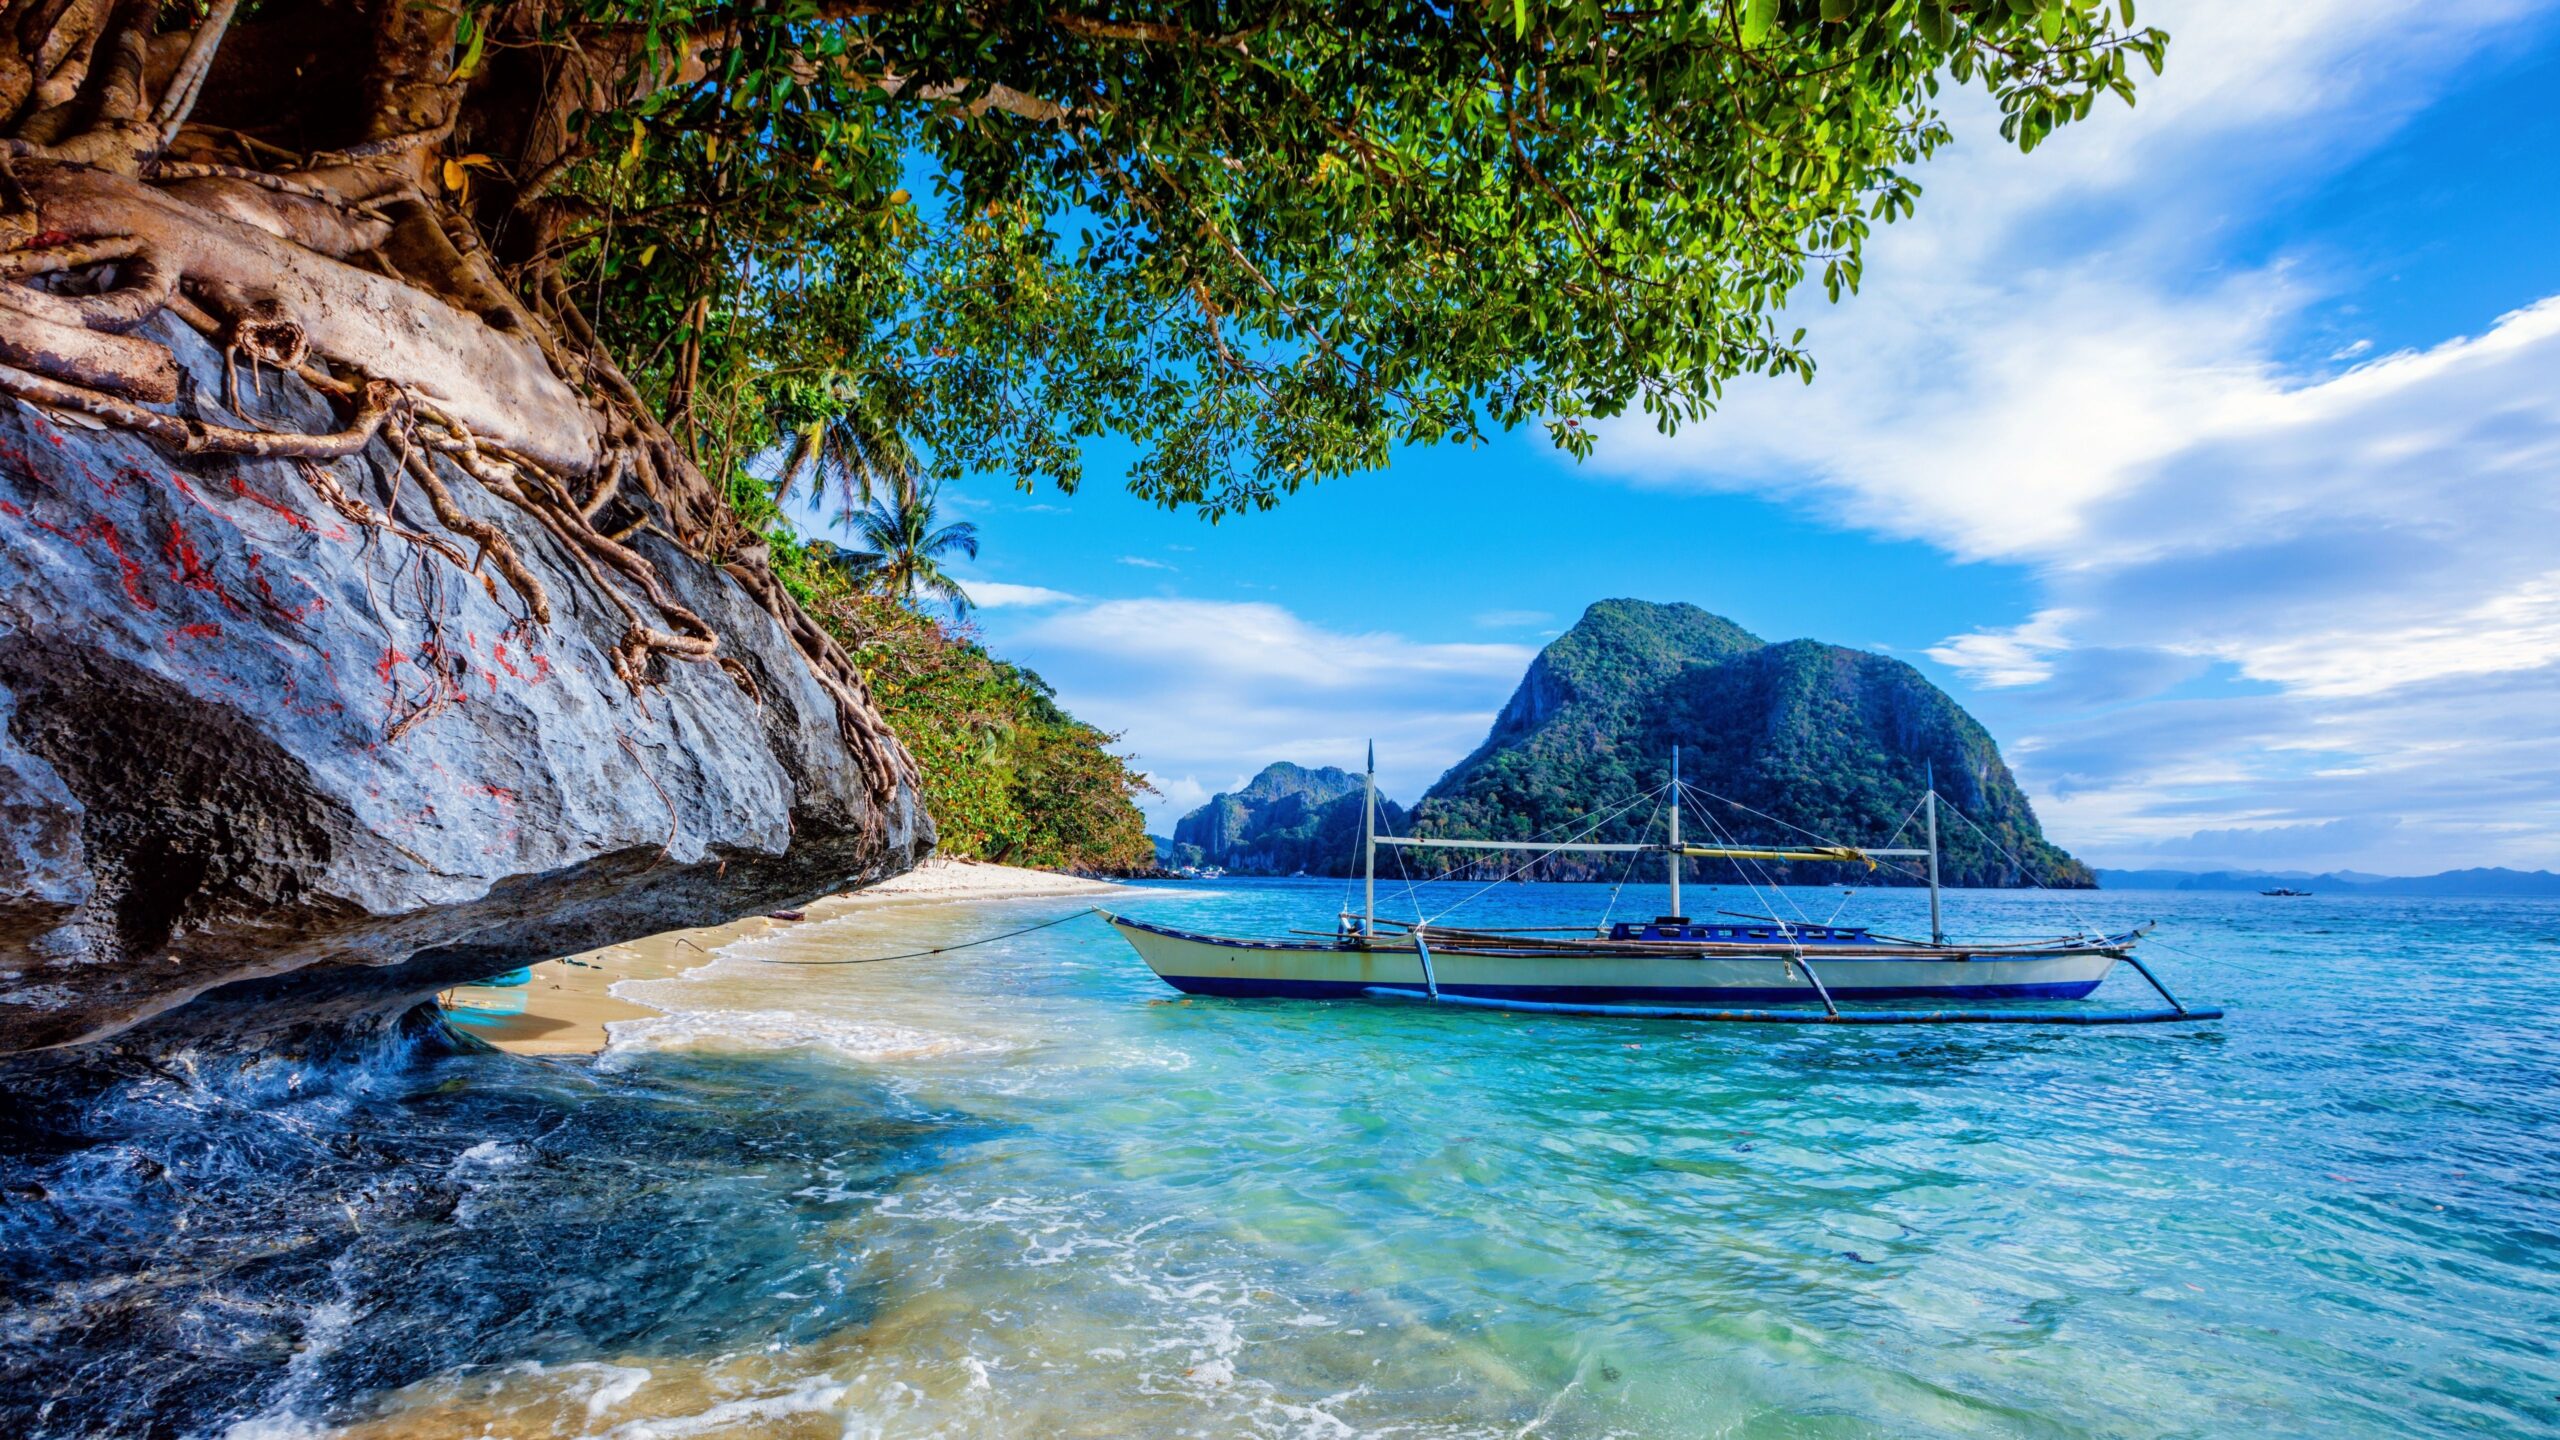 Комфортный пляжный отдых без визы на Филиппинских островах